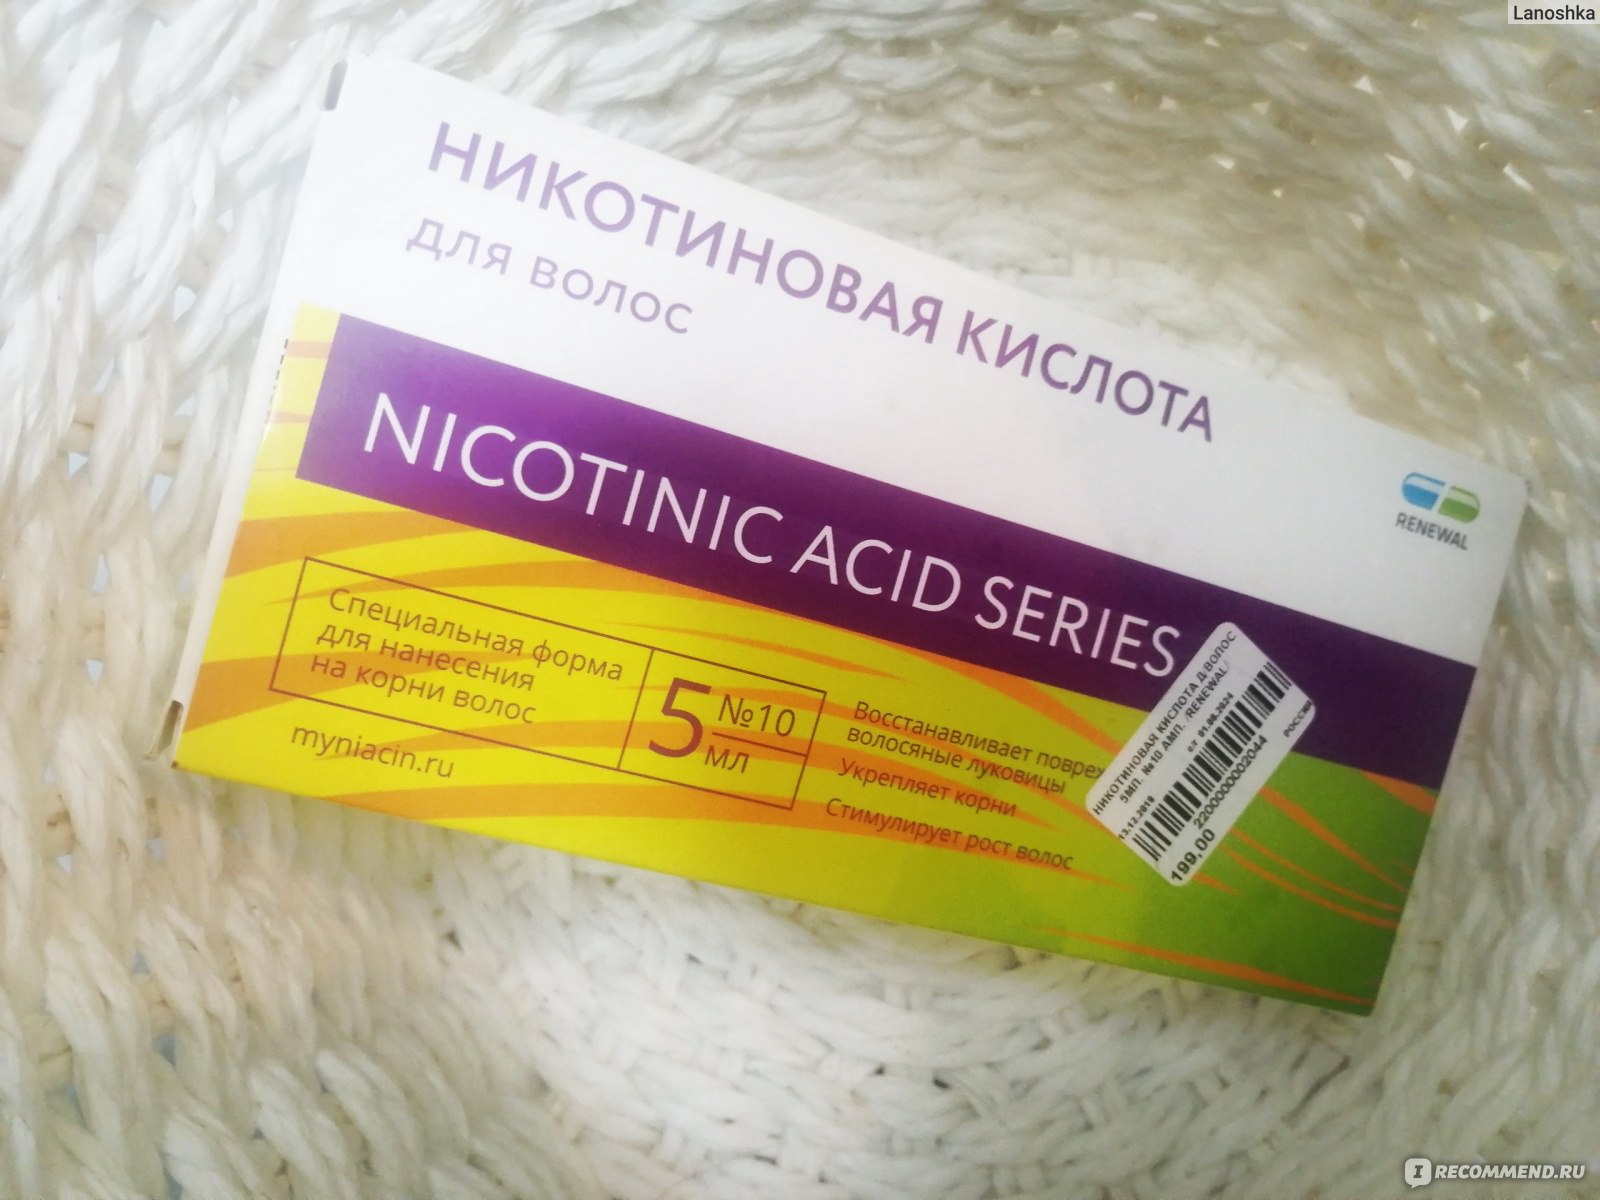 Никотиновая кислота в таблетках можно ли втирать в волосы